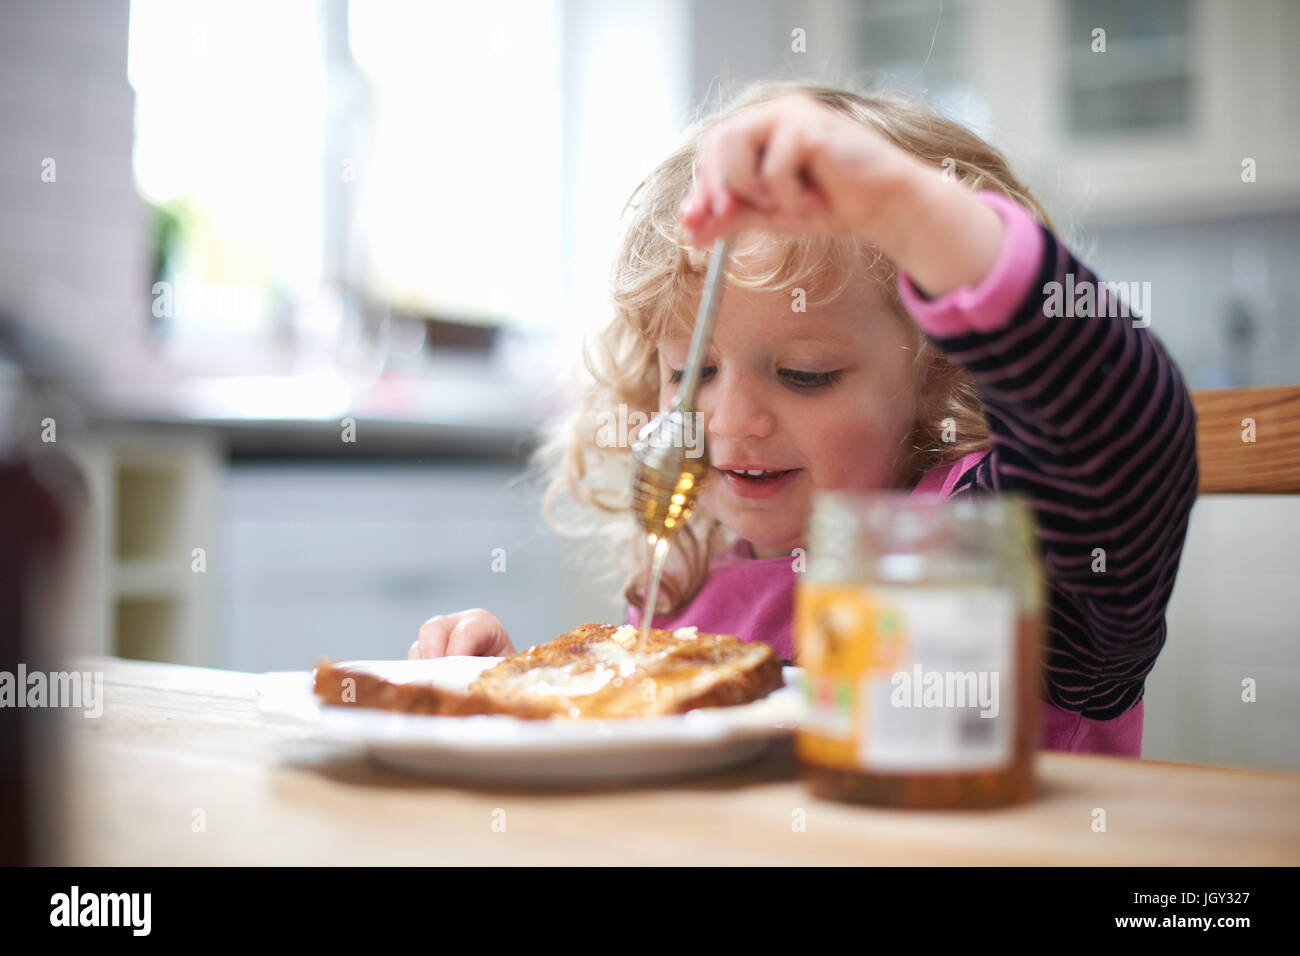 Jeune fille assise à une table de cuisine, un filet de miel sur toast Banque D'Images